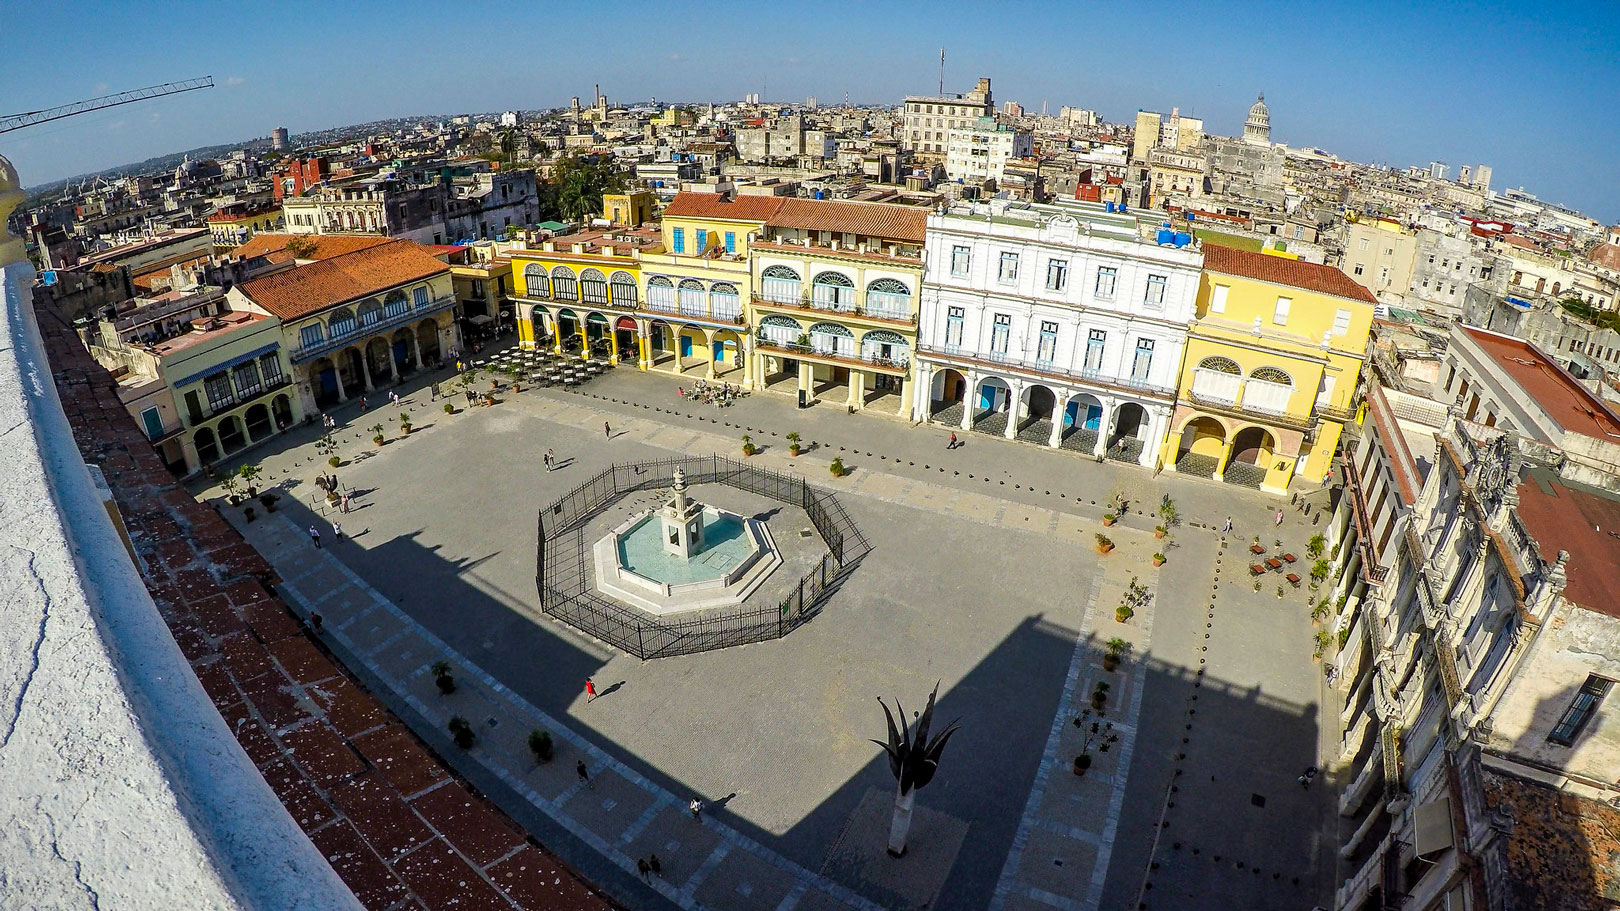 Old Square in Havana